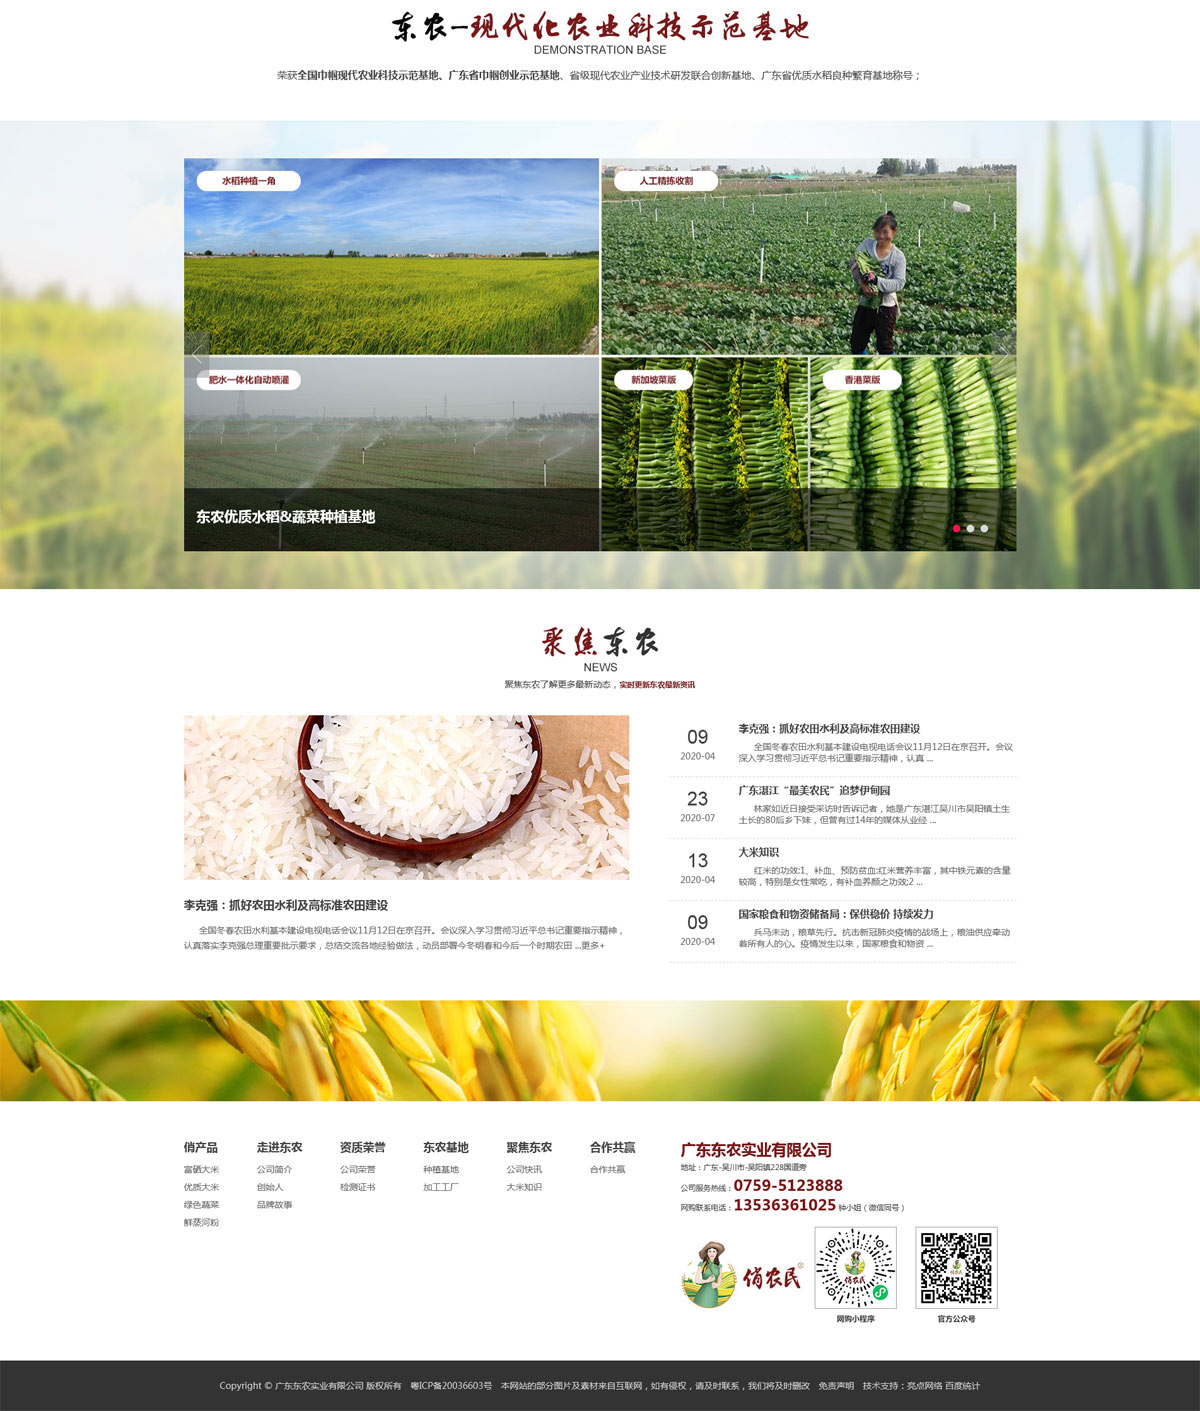 東農米業企業網站策劃設計圖